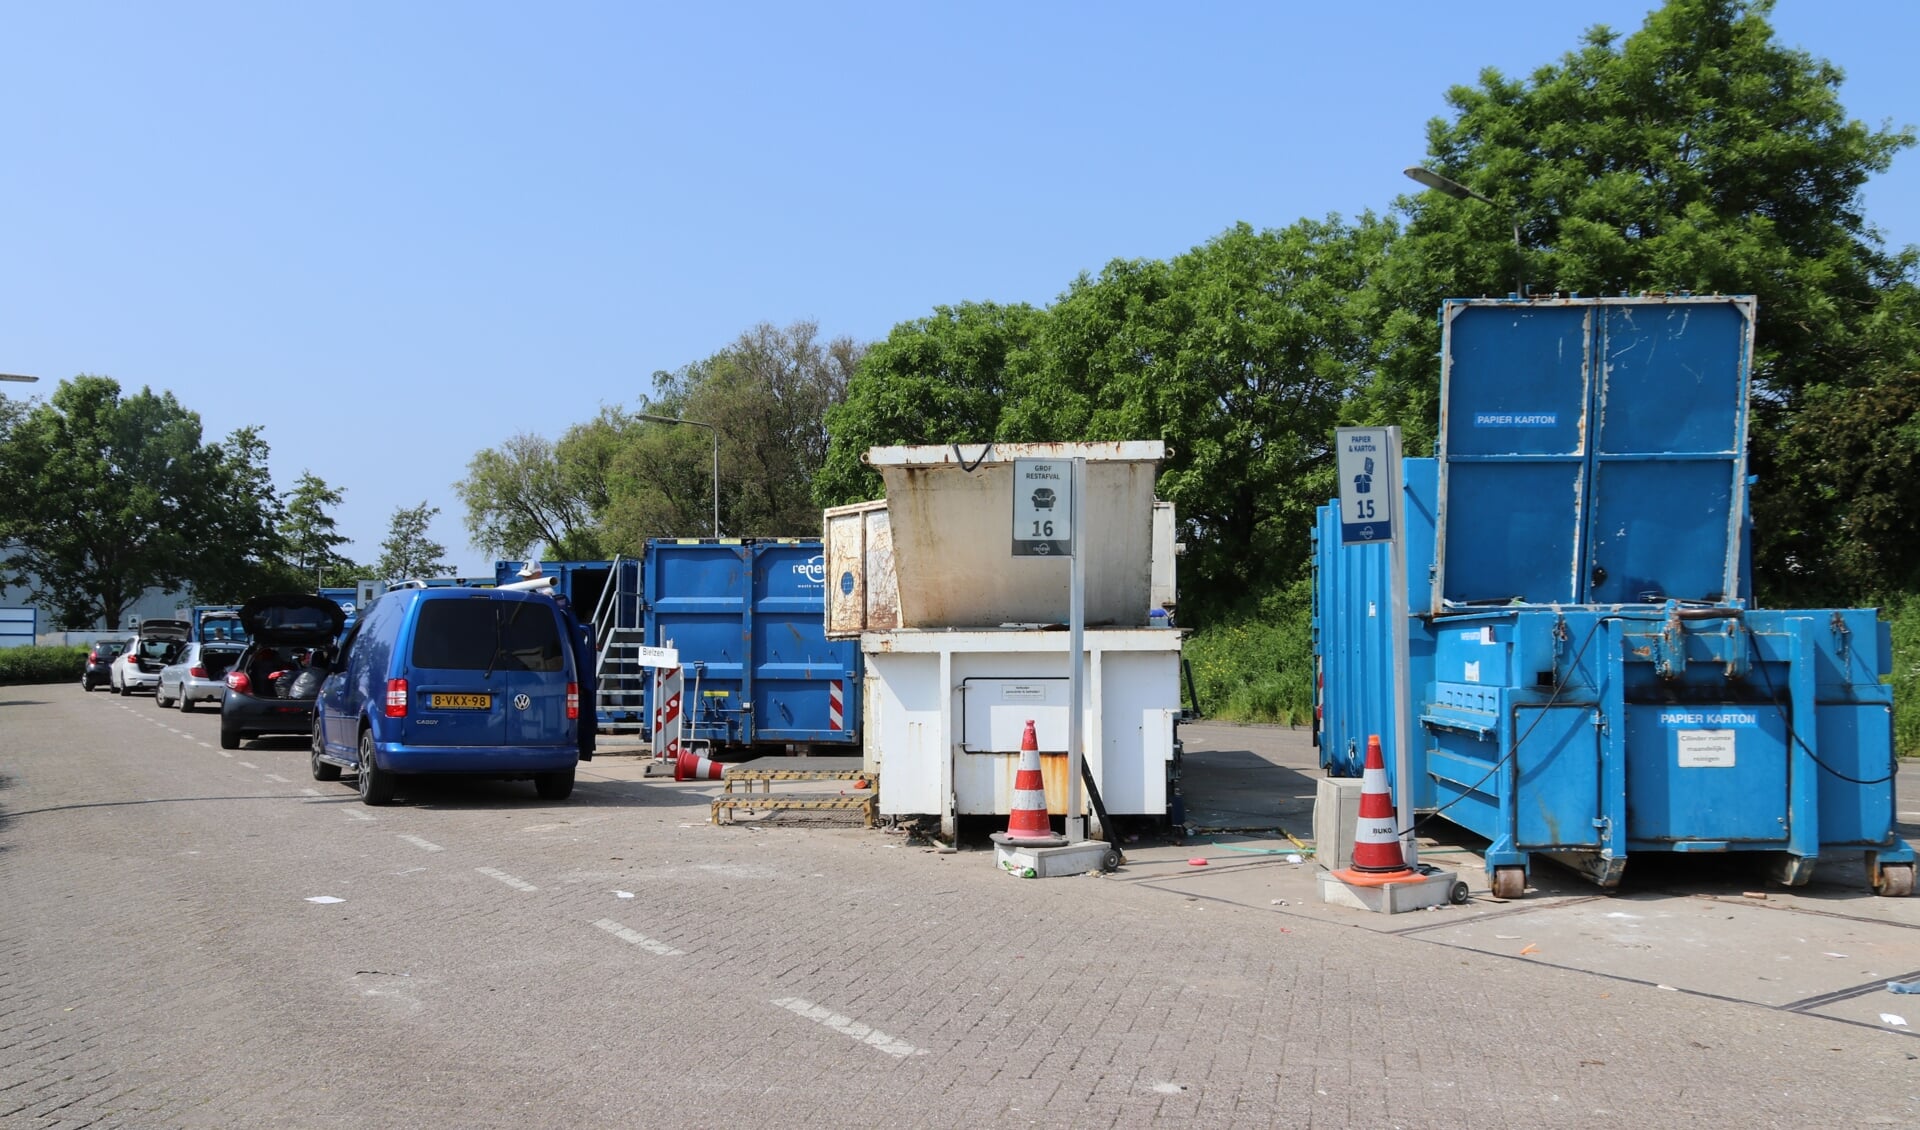 Het huidige afvalbrengstation blinkt niet uit in gebruiksvriendelijkheid, veiligheid en gemak., vindt de gemeente. (Foto: Spa Media) 